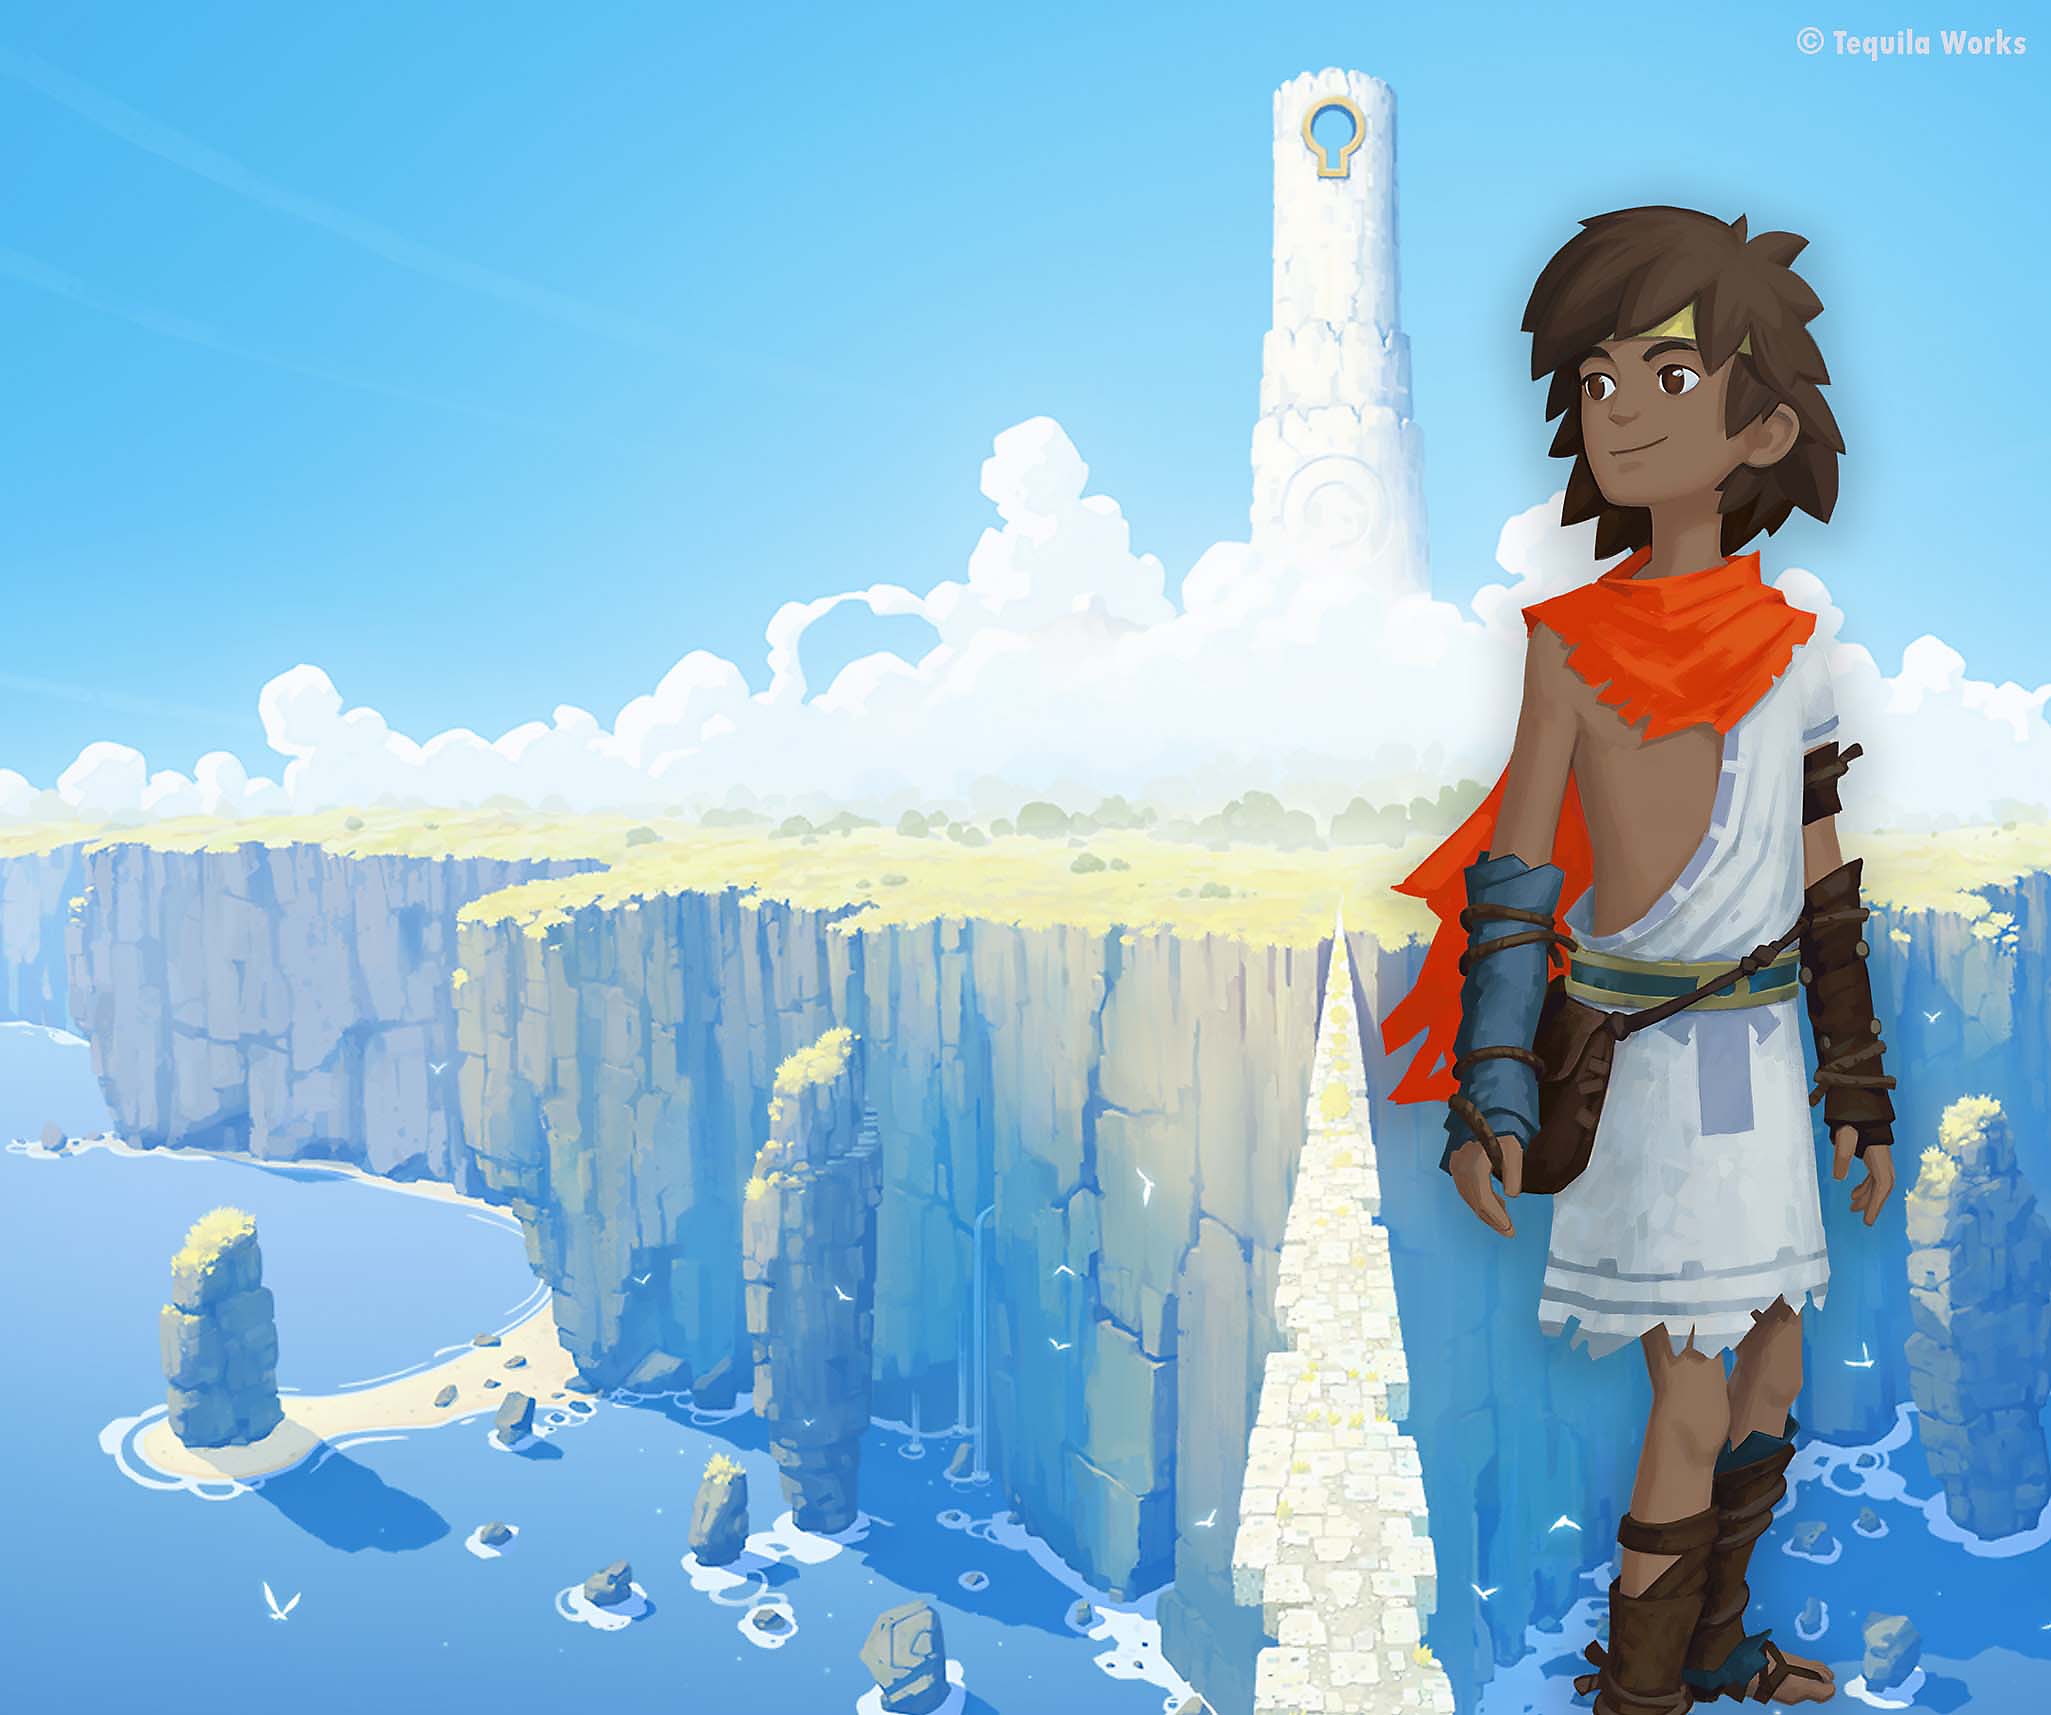 A RiME fő grafikája a főszereplőt ábrázolja egy impozáns, felhővel borított sziget előtt.